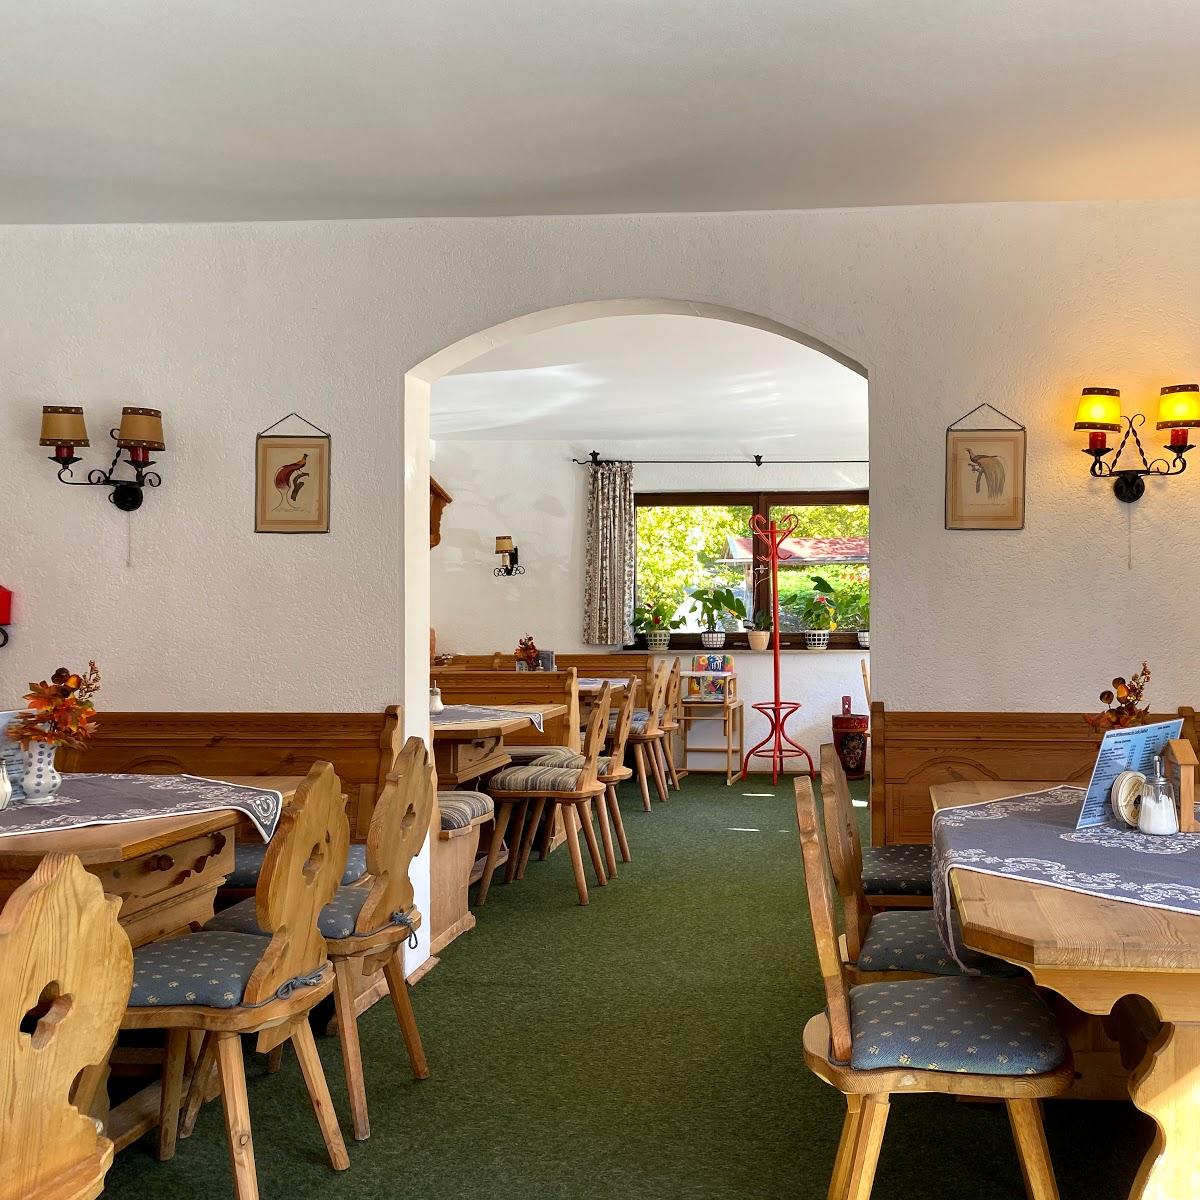 Restaurant "Café Gelfart" in Ramsau bei Berchtesgaden